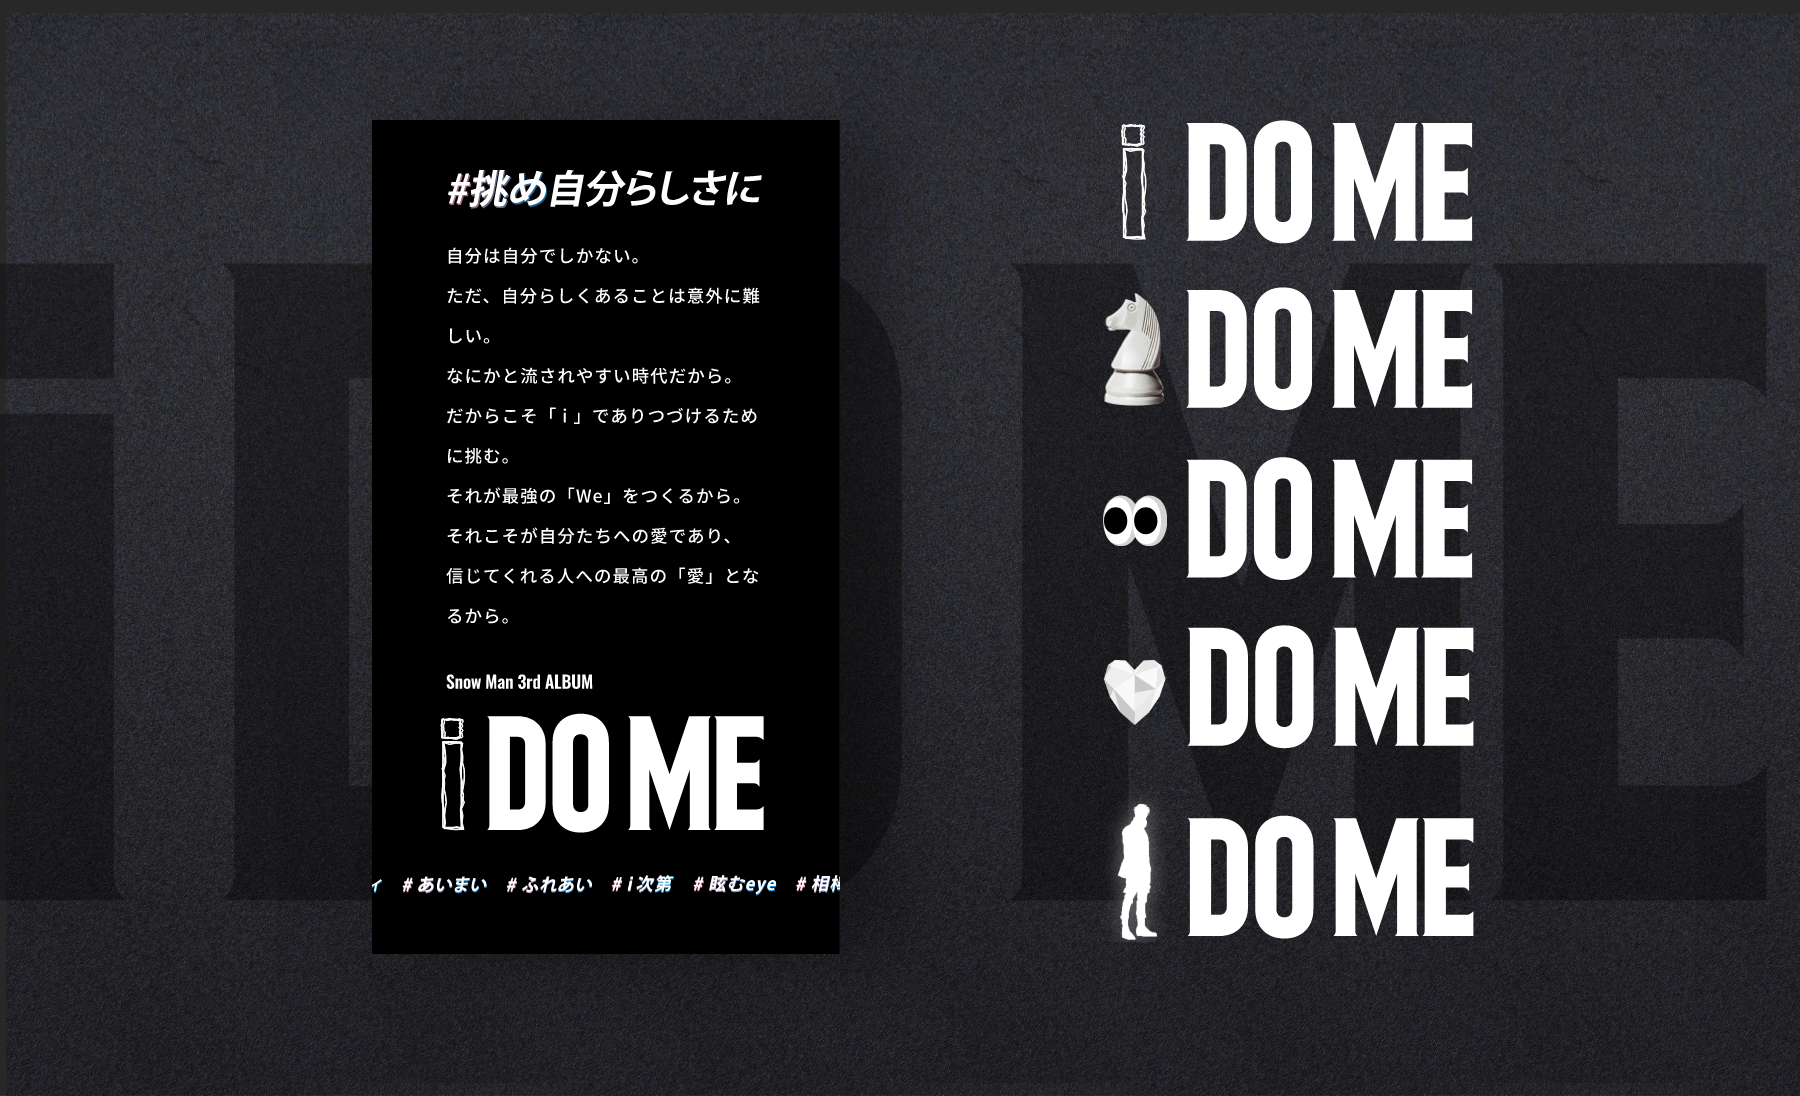 Snow Man-3rd ALBUM「i DO ME｣ / Promotion Website